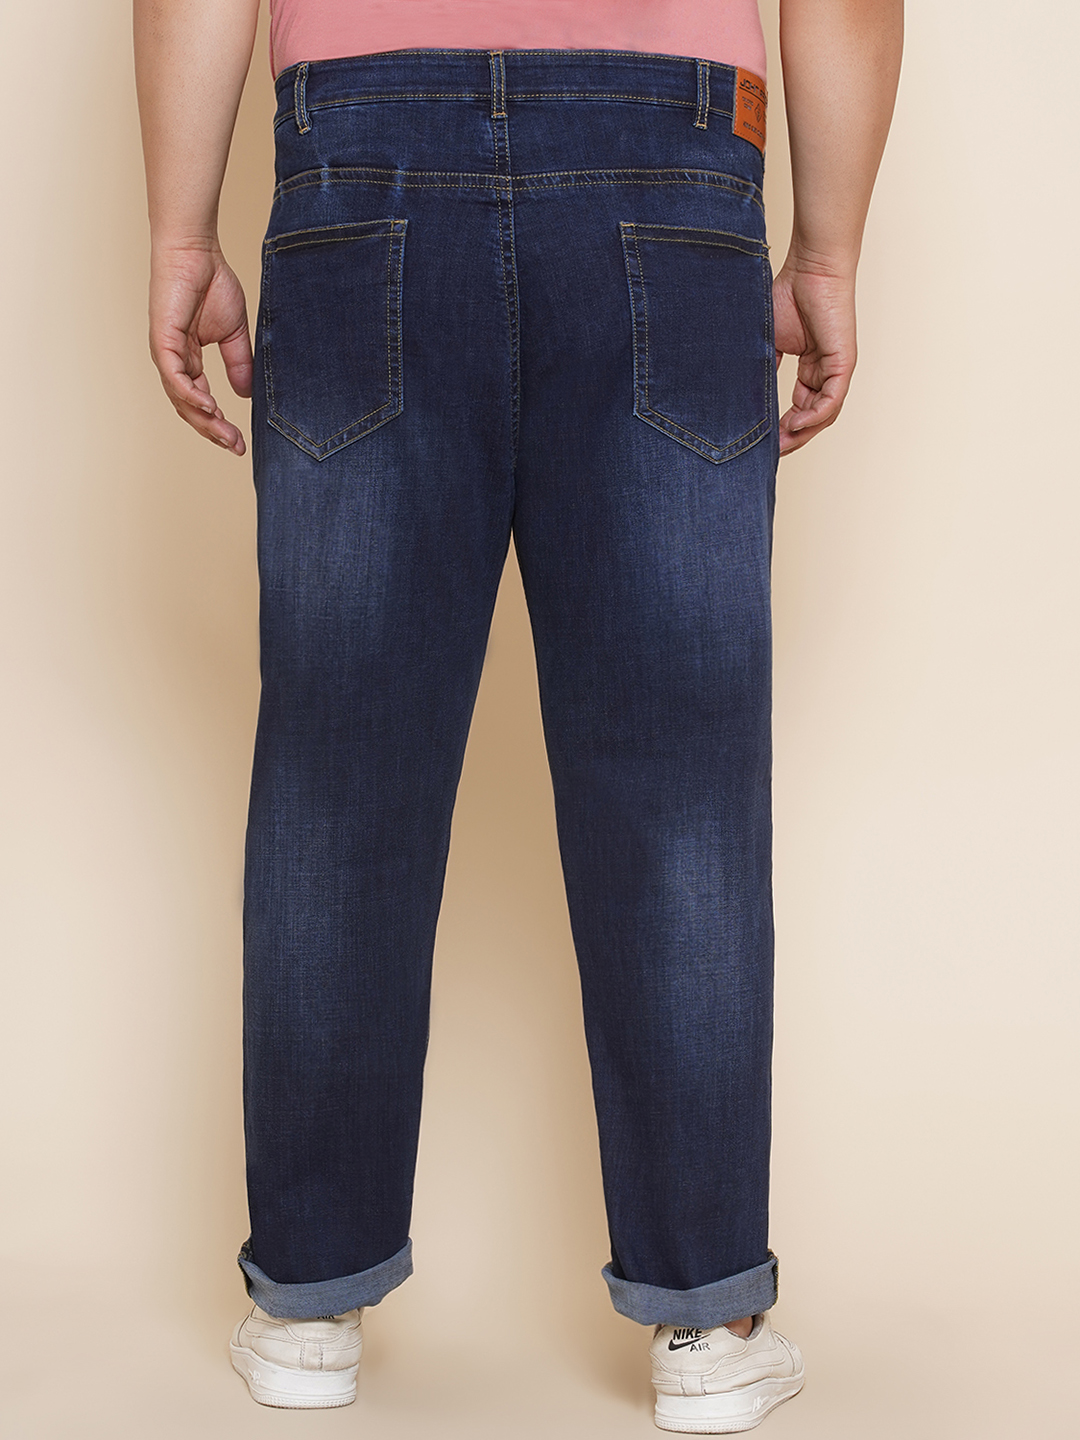 bottomwear/jeans/JPJ12203/jpj12203-5.jpg